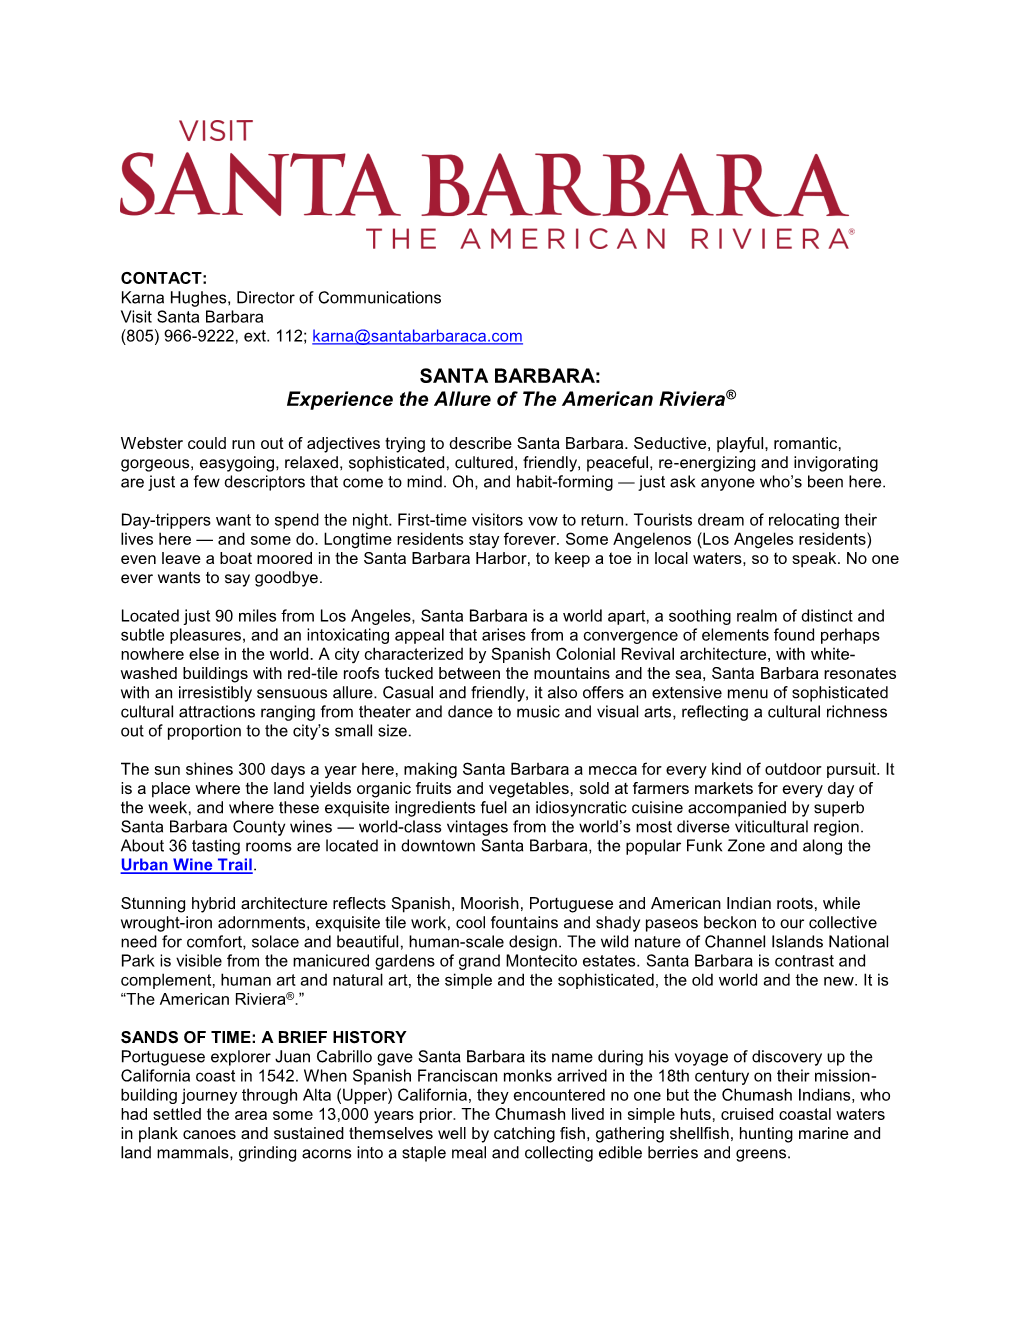 Santa Barbara History